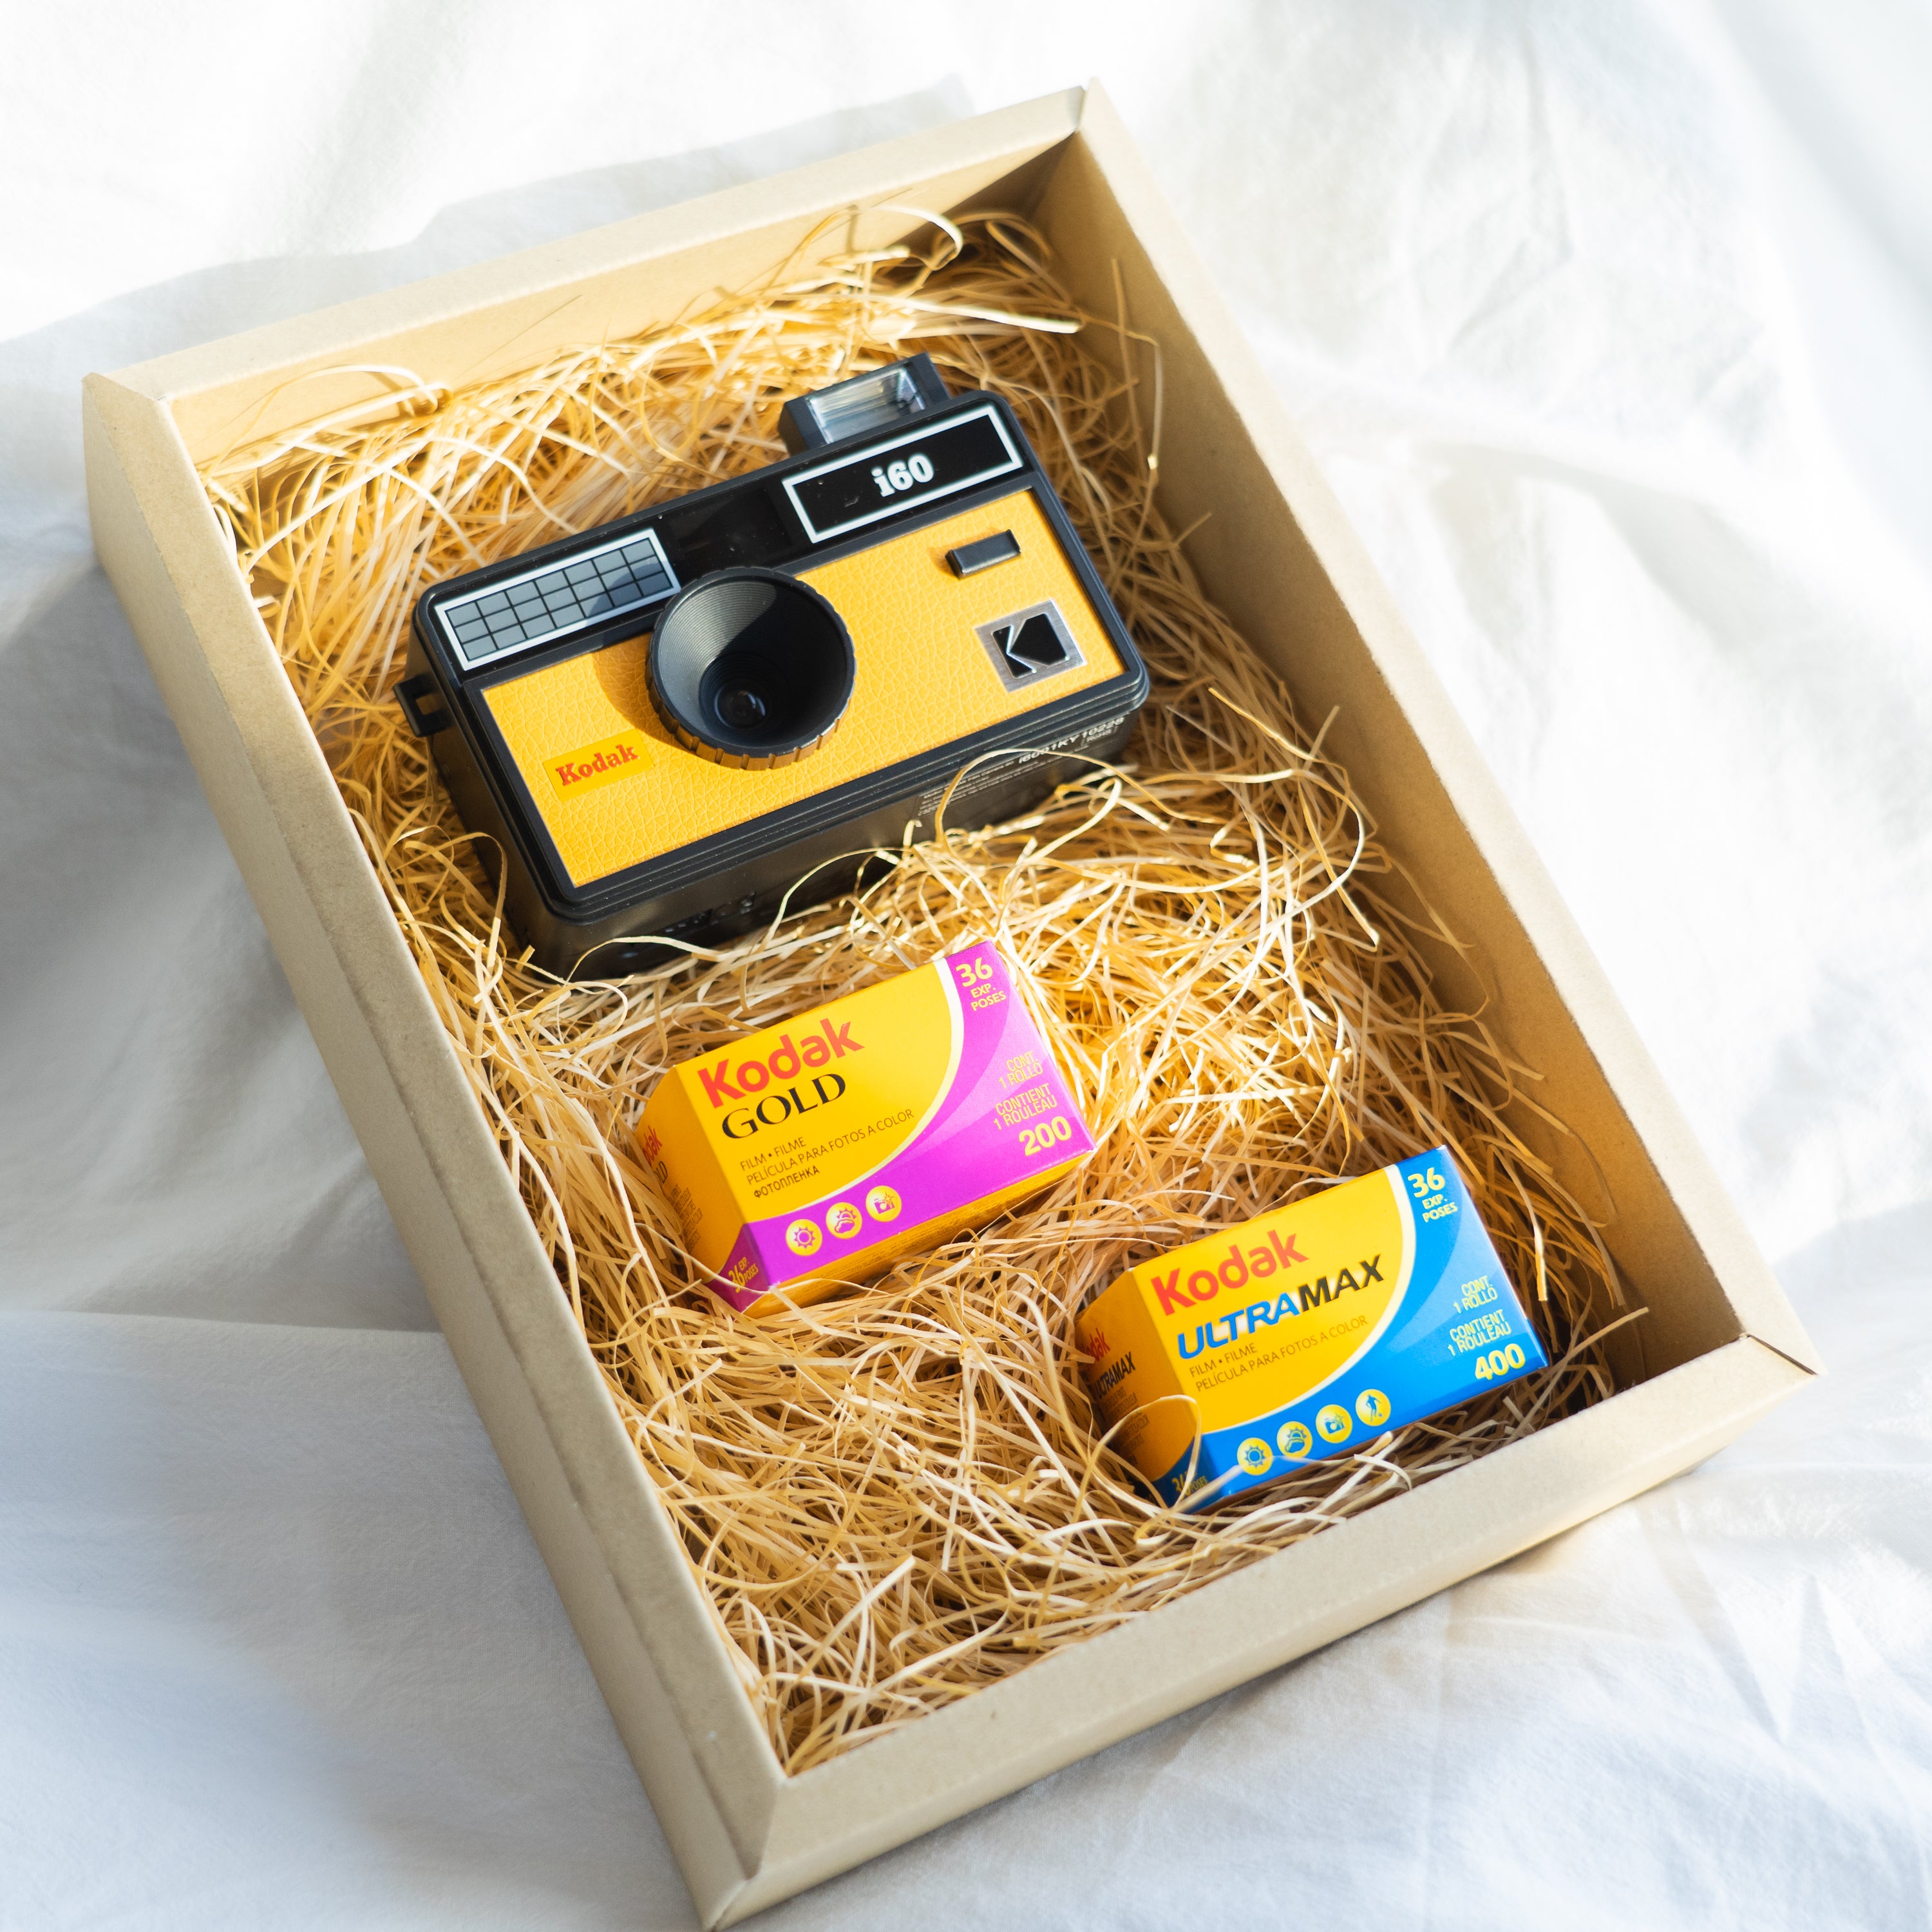 Kodak Film Camera i60 コダックイエロー | フィルミーカメラ